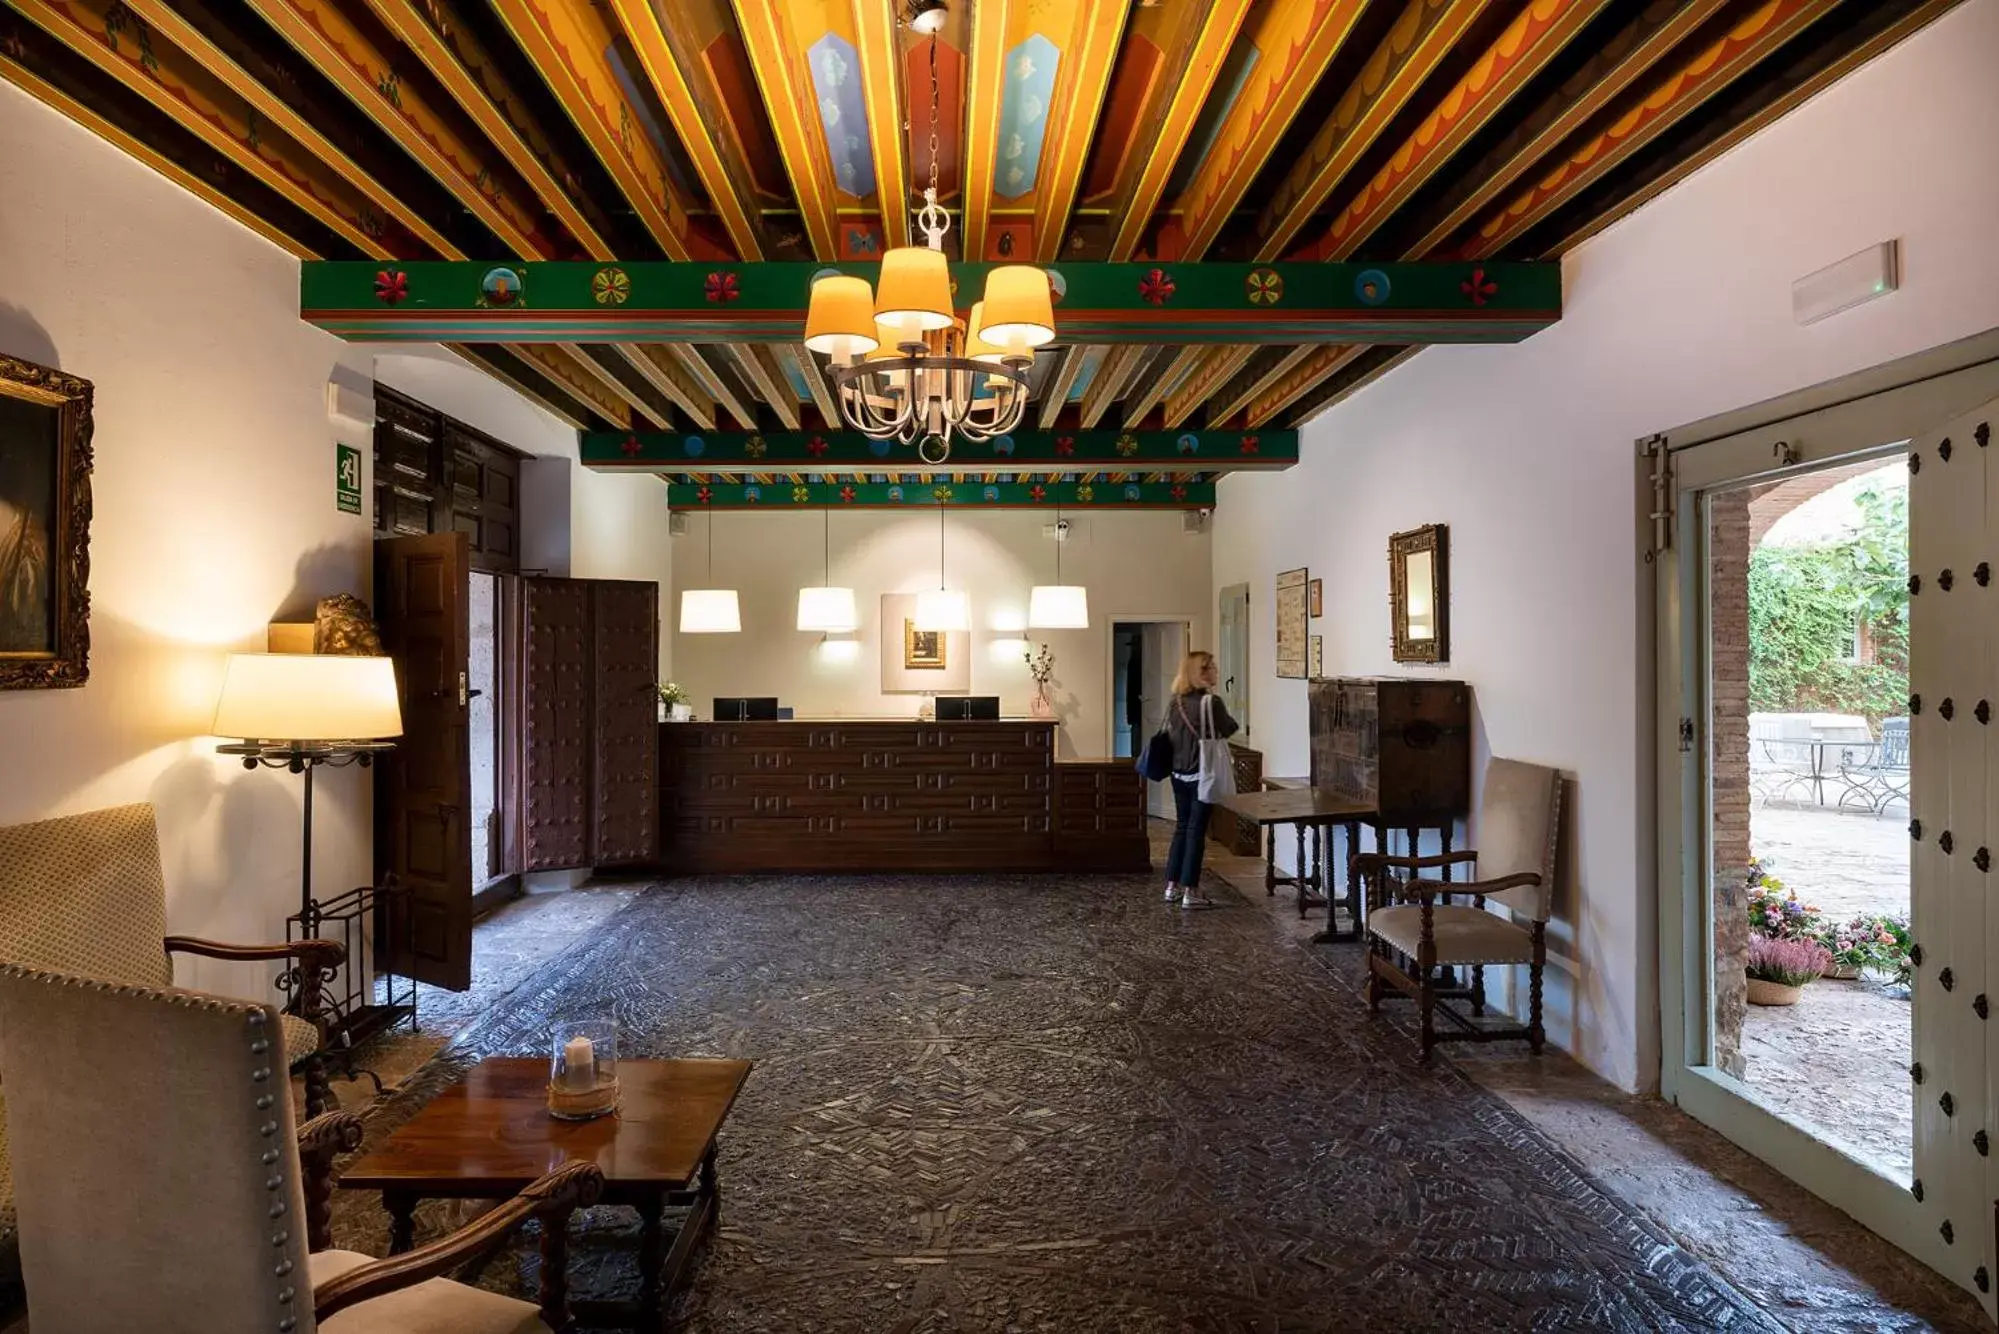 Lobby or reception in Parador de Almagro